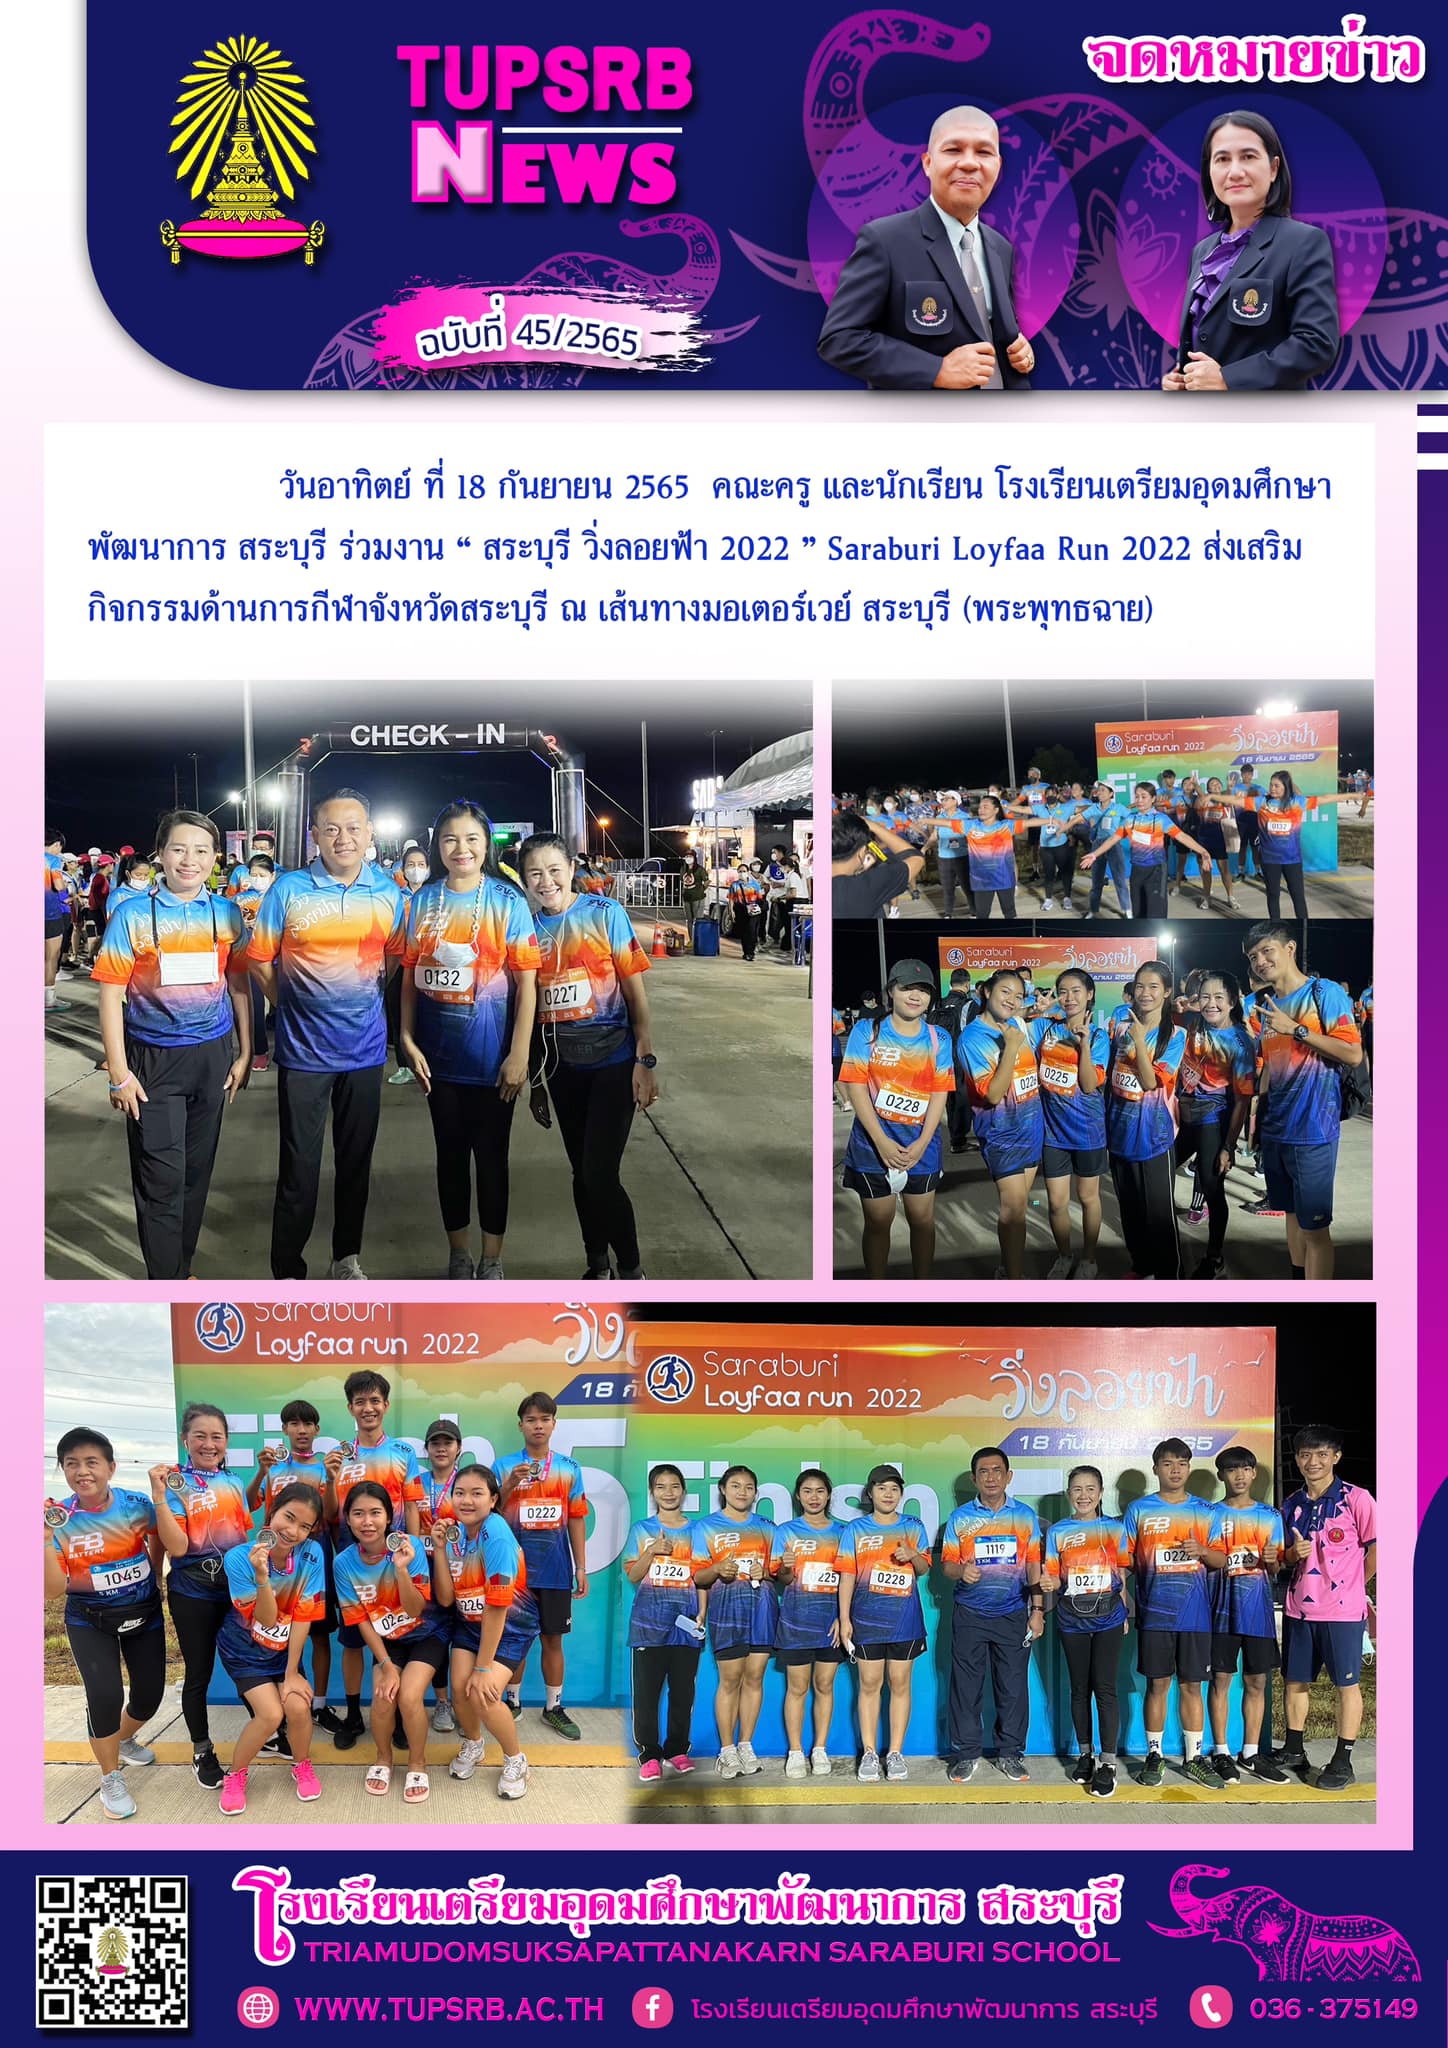 วันอาทิตย์ ที่ 18 กันยายน 2565 คณะครู และนักเรียน โรงเรียนเตรียมอุดมศึกษาพัฒนาการ สระบุรี ร่วมงาน “ สระบุรี วิ่งลอยฟ้า 2022 ” Saraburi Loyfaa Run 2022 ส่งเสริมกิจกรรมด้านการกีฬาจังหวัดสระบุรี ณ เส้นทางมอเตอร์เวย์ สระบุรี (พระพุทธฉาย) ภาพ : ทศพล บุญรักษา ข่าว : ศรัลย์ภัสร์ จันทร์คำ ฝ่ายประชาสัมพันธ์ TUPSRB